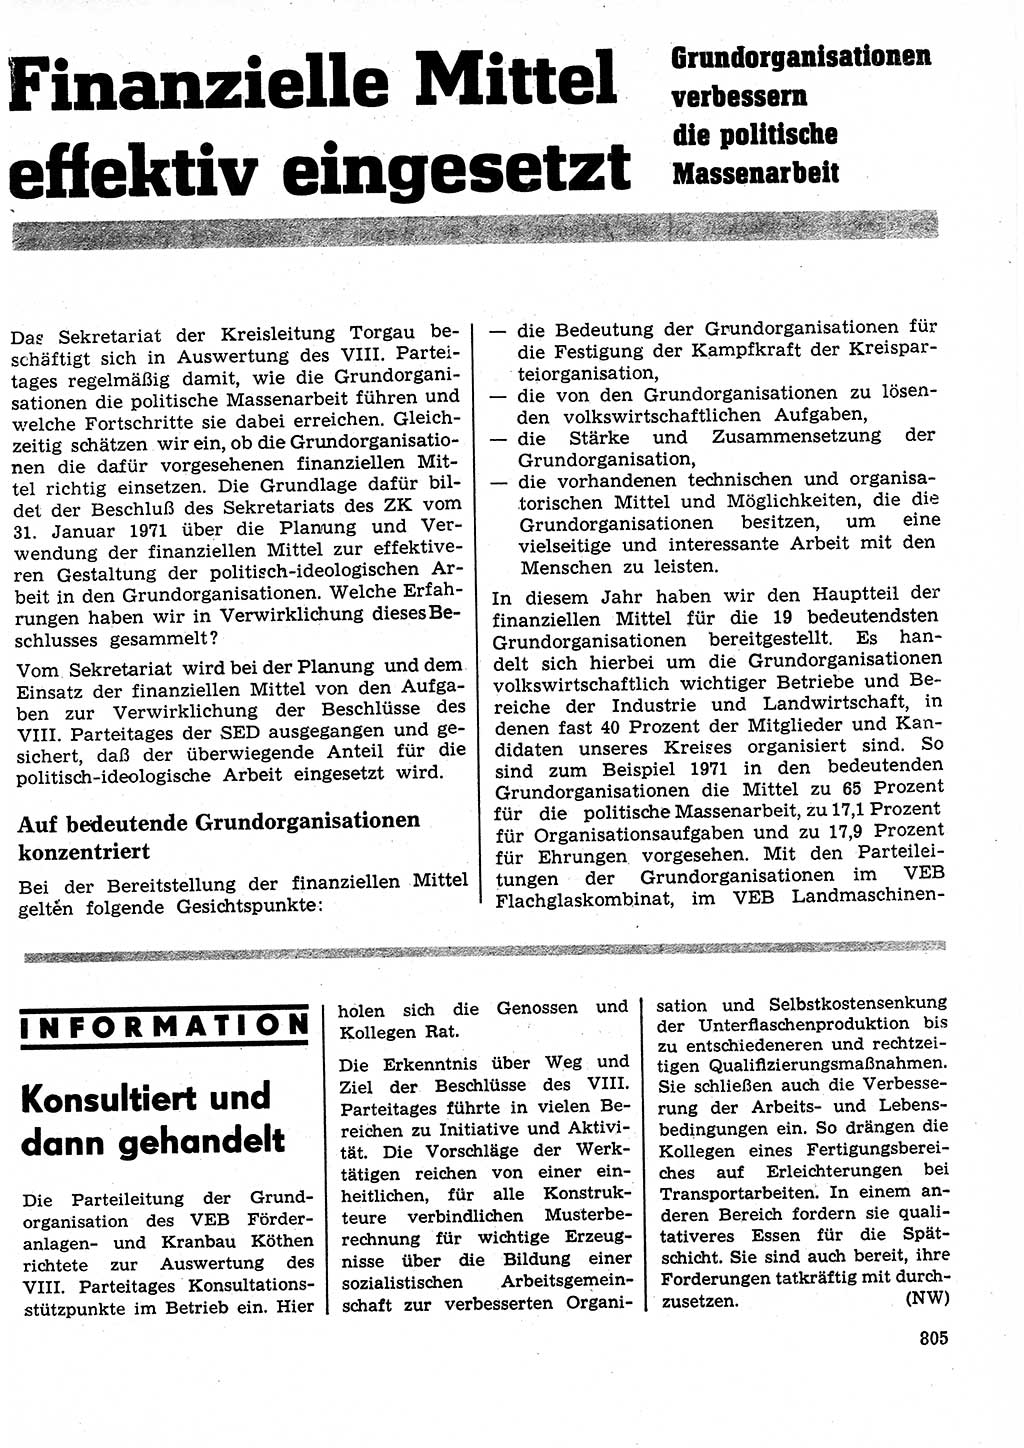 Neuer Weg (NW), Organ des Zentralkomitees (ZK) der SED (Sozialistische Einheitspartei Deutschlands) für Fragen des Parteilebens, 26. Jahrgang [Deutsche Demokratische Republik (DDR)] 1971, Seite 805 (NW ZK SED DDR 1971, S. 805)